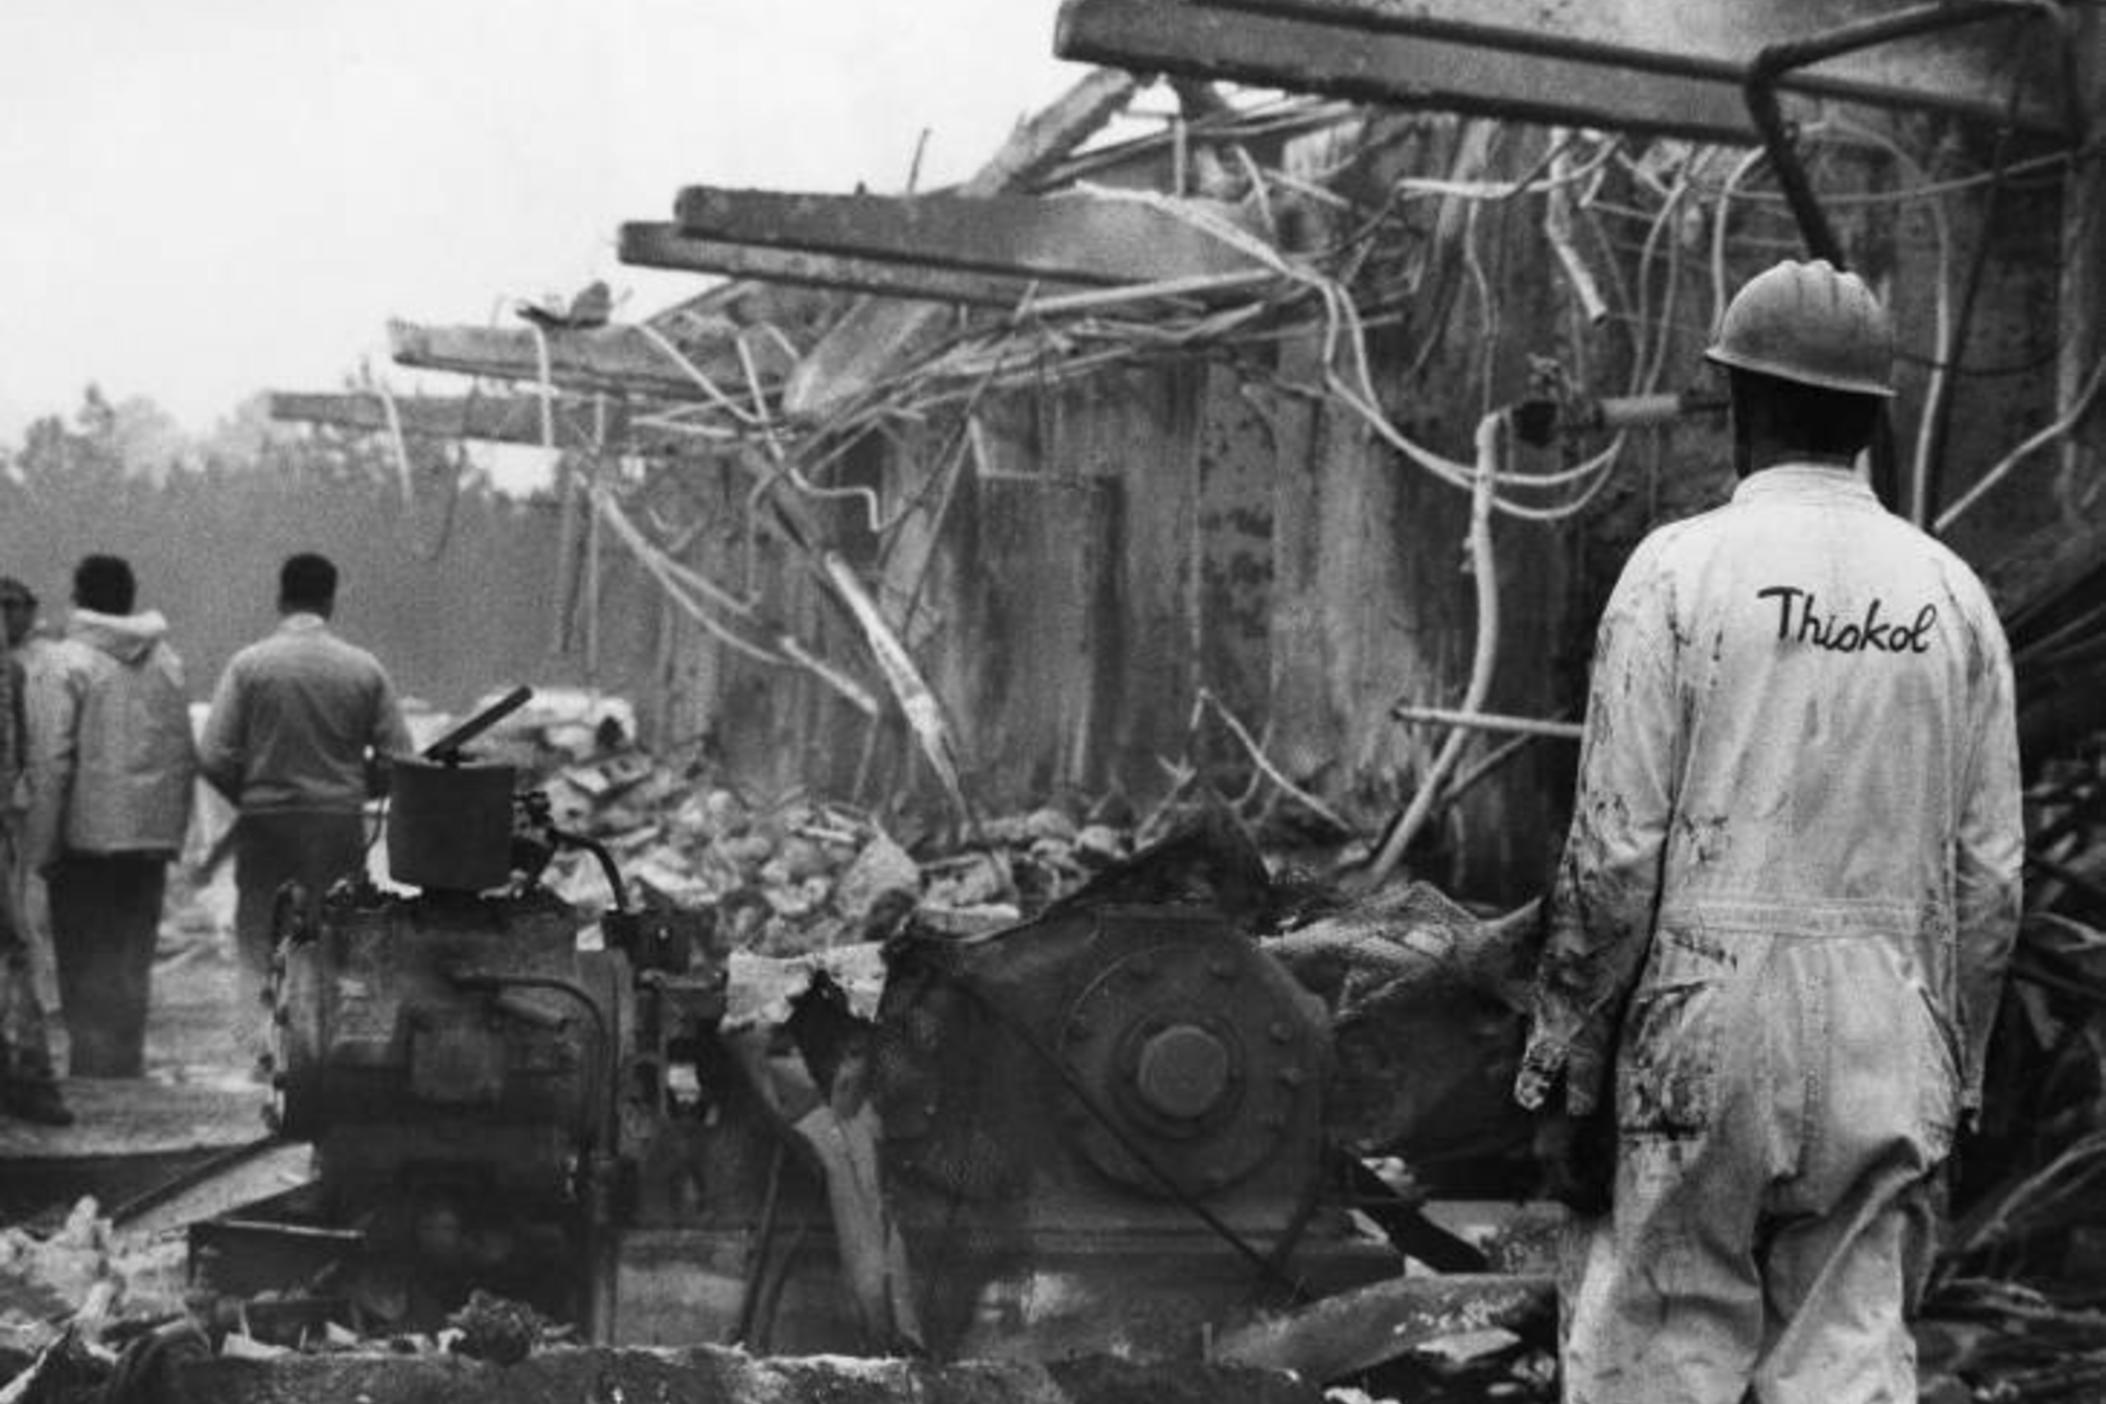 1971 Georgia Thiokol Plant explosion that killed 29, now largely forgotten